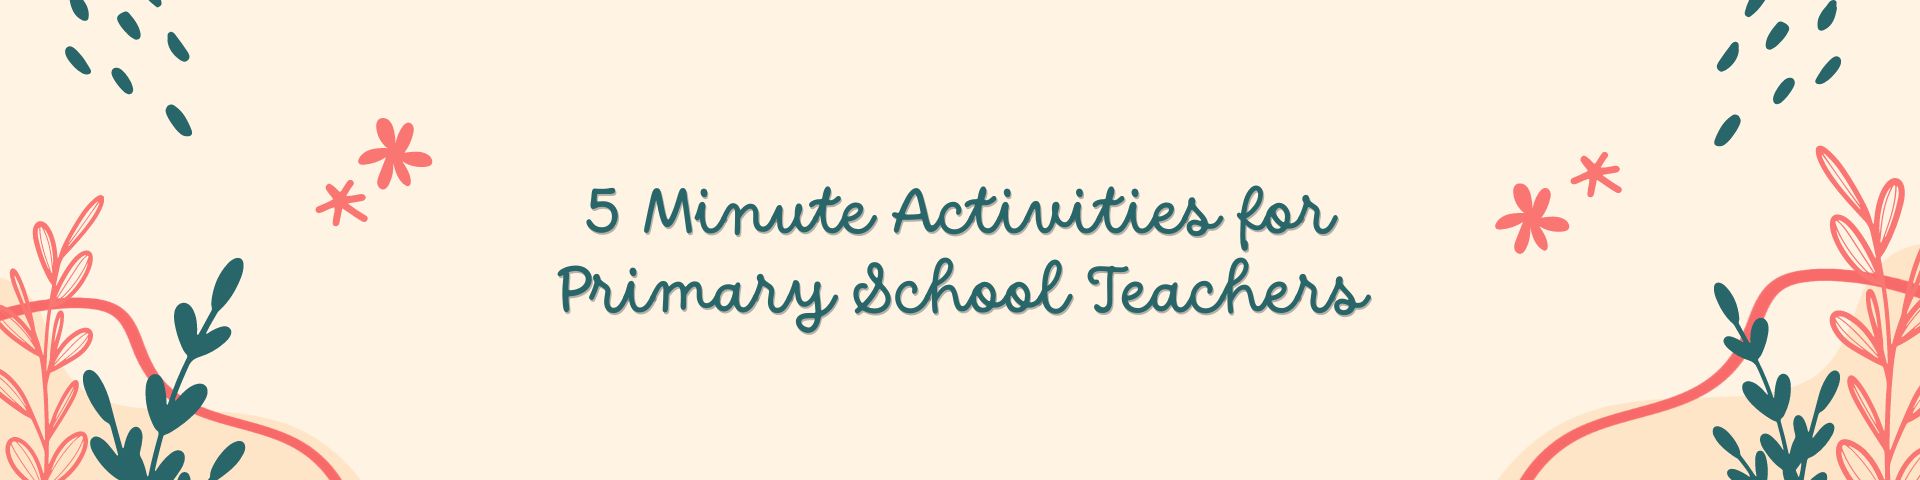 5 Minute Activities for Primary School Teachers